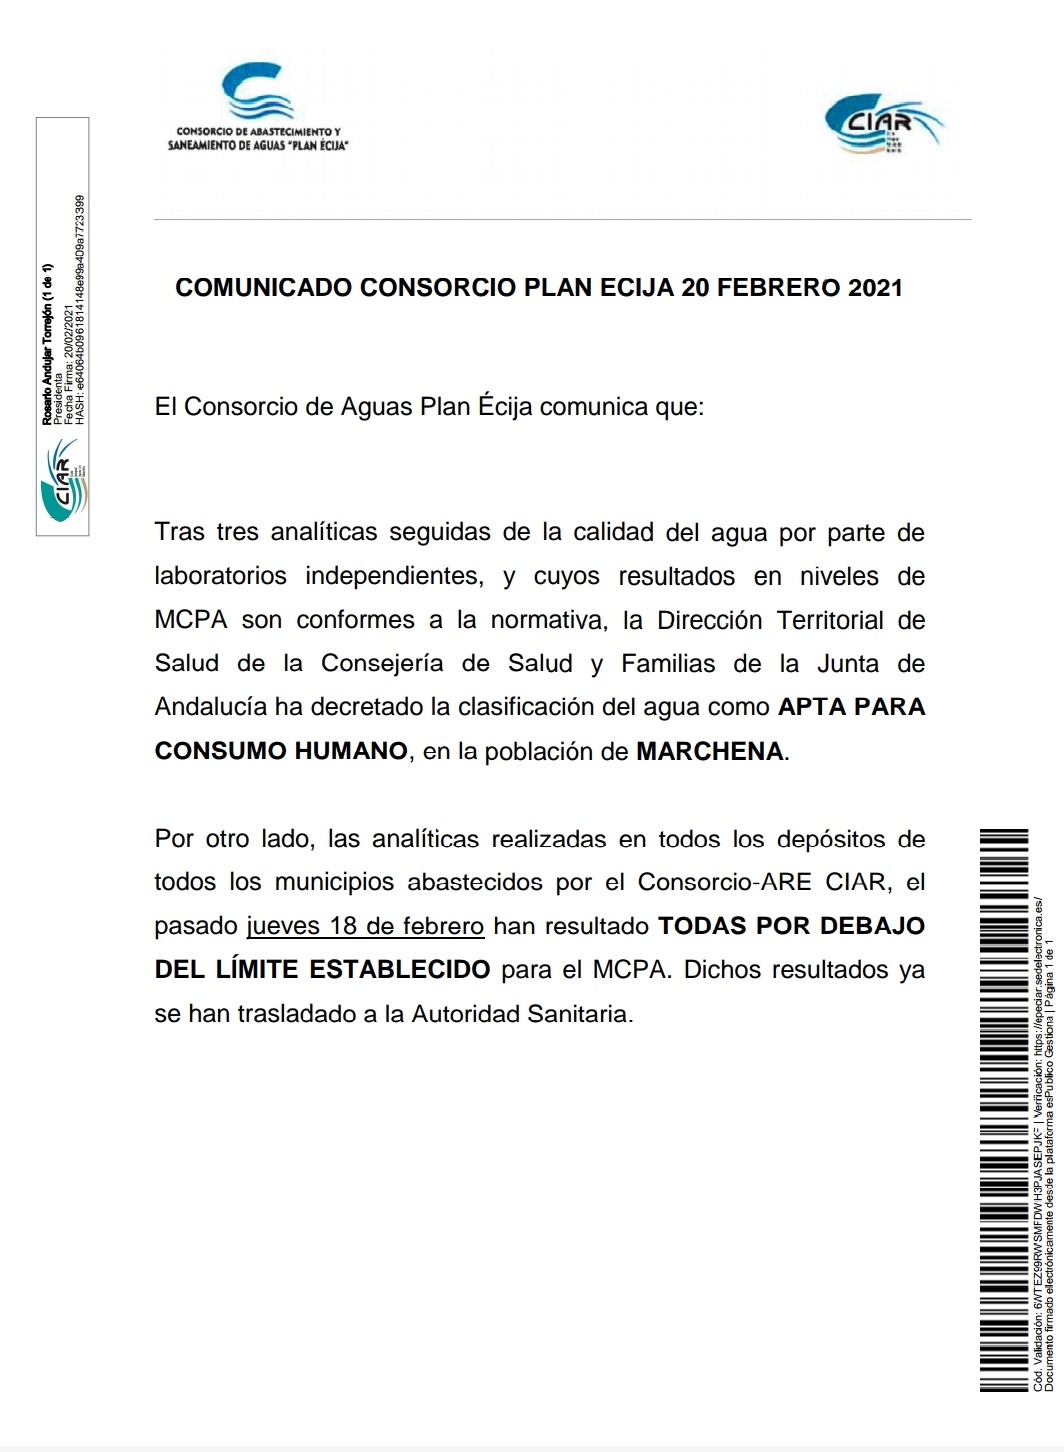 2.-COMUNICADO DEL CONSORCIO DE  AGUAS PLAN ÉCIJA